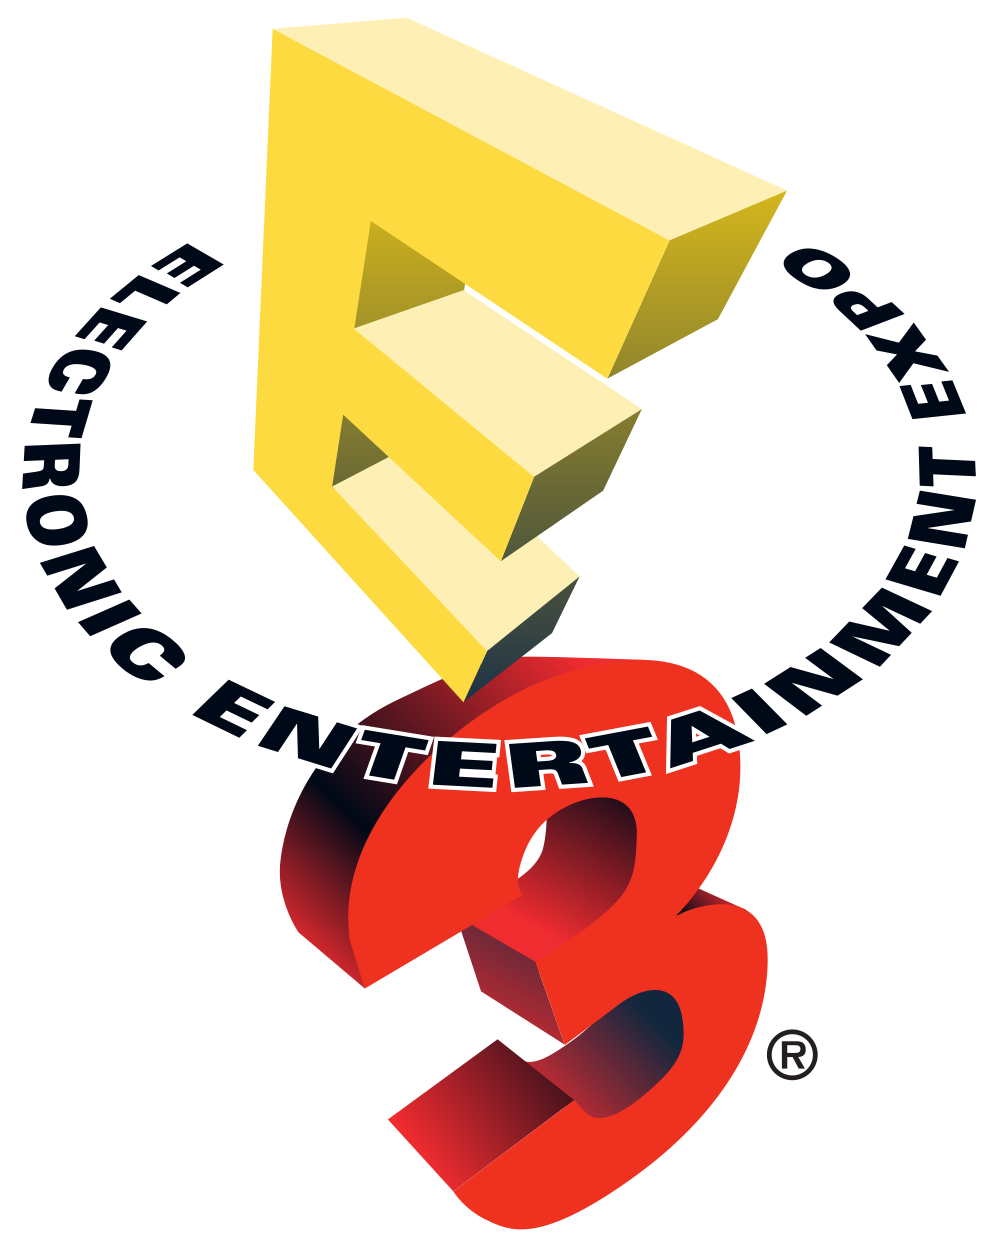 E3 2017 : Conférence Sony, notre sélection !